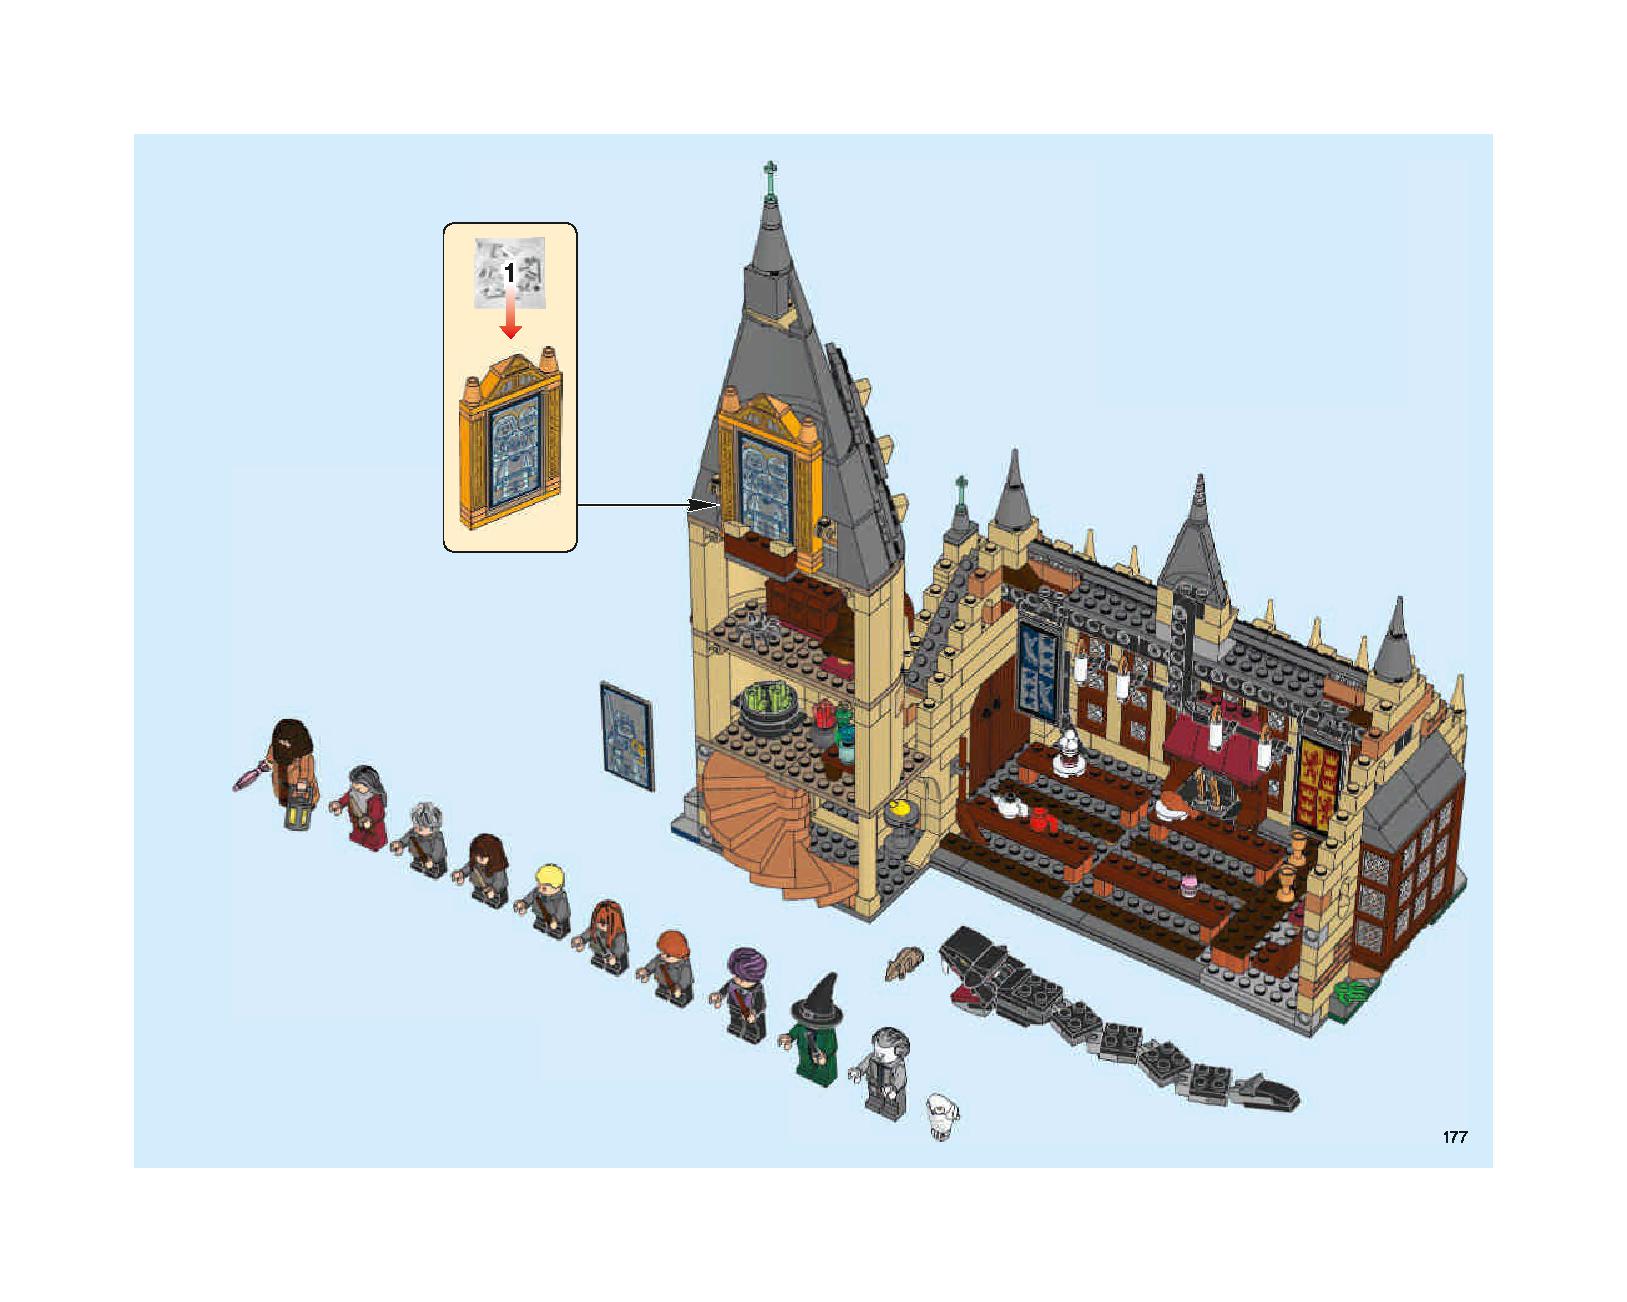 ホグワーツの大広間 75954 レゴの商品情報 レゴの説明書・組立方法 177 page